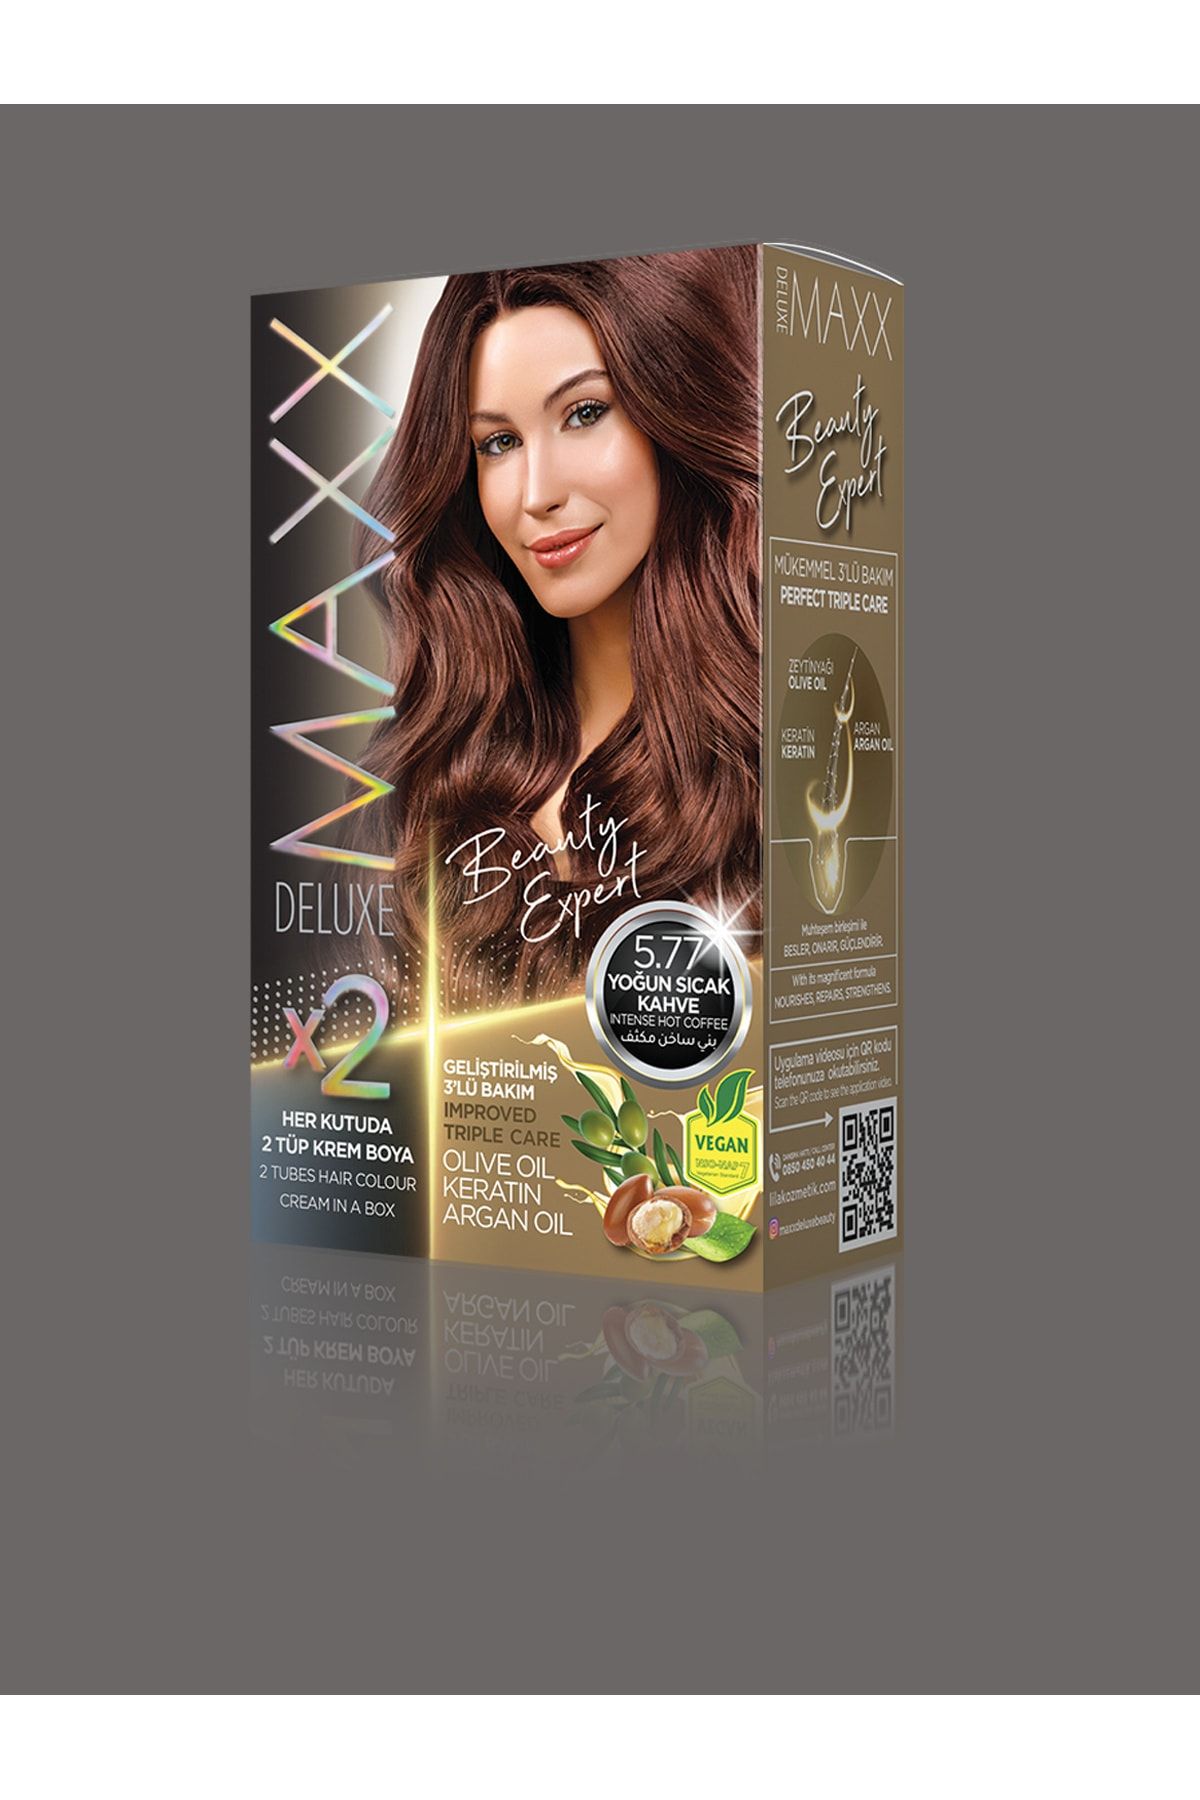 MAXX DELUXE Maxx Beauty Expert Set Saç Boyası Yoğun Sıcak Kahve 5.77